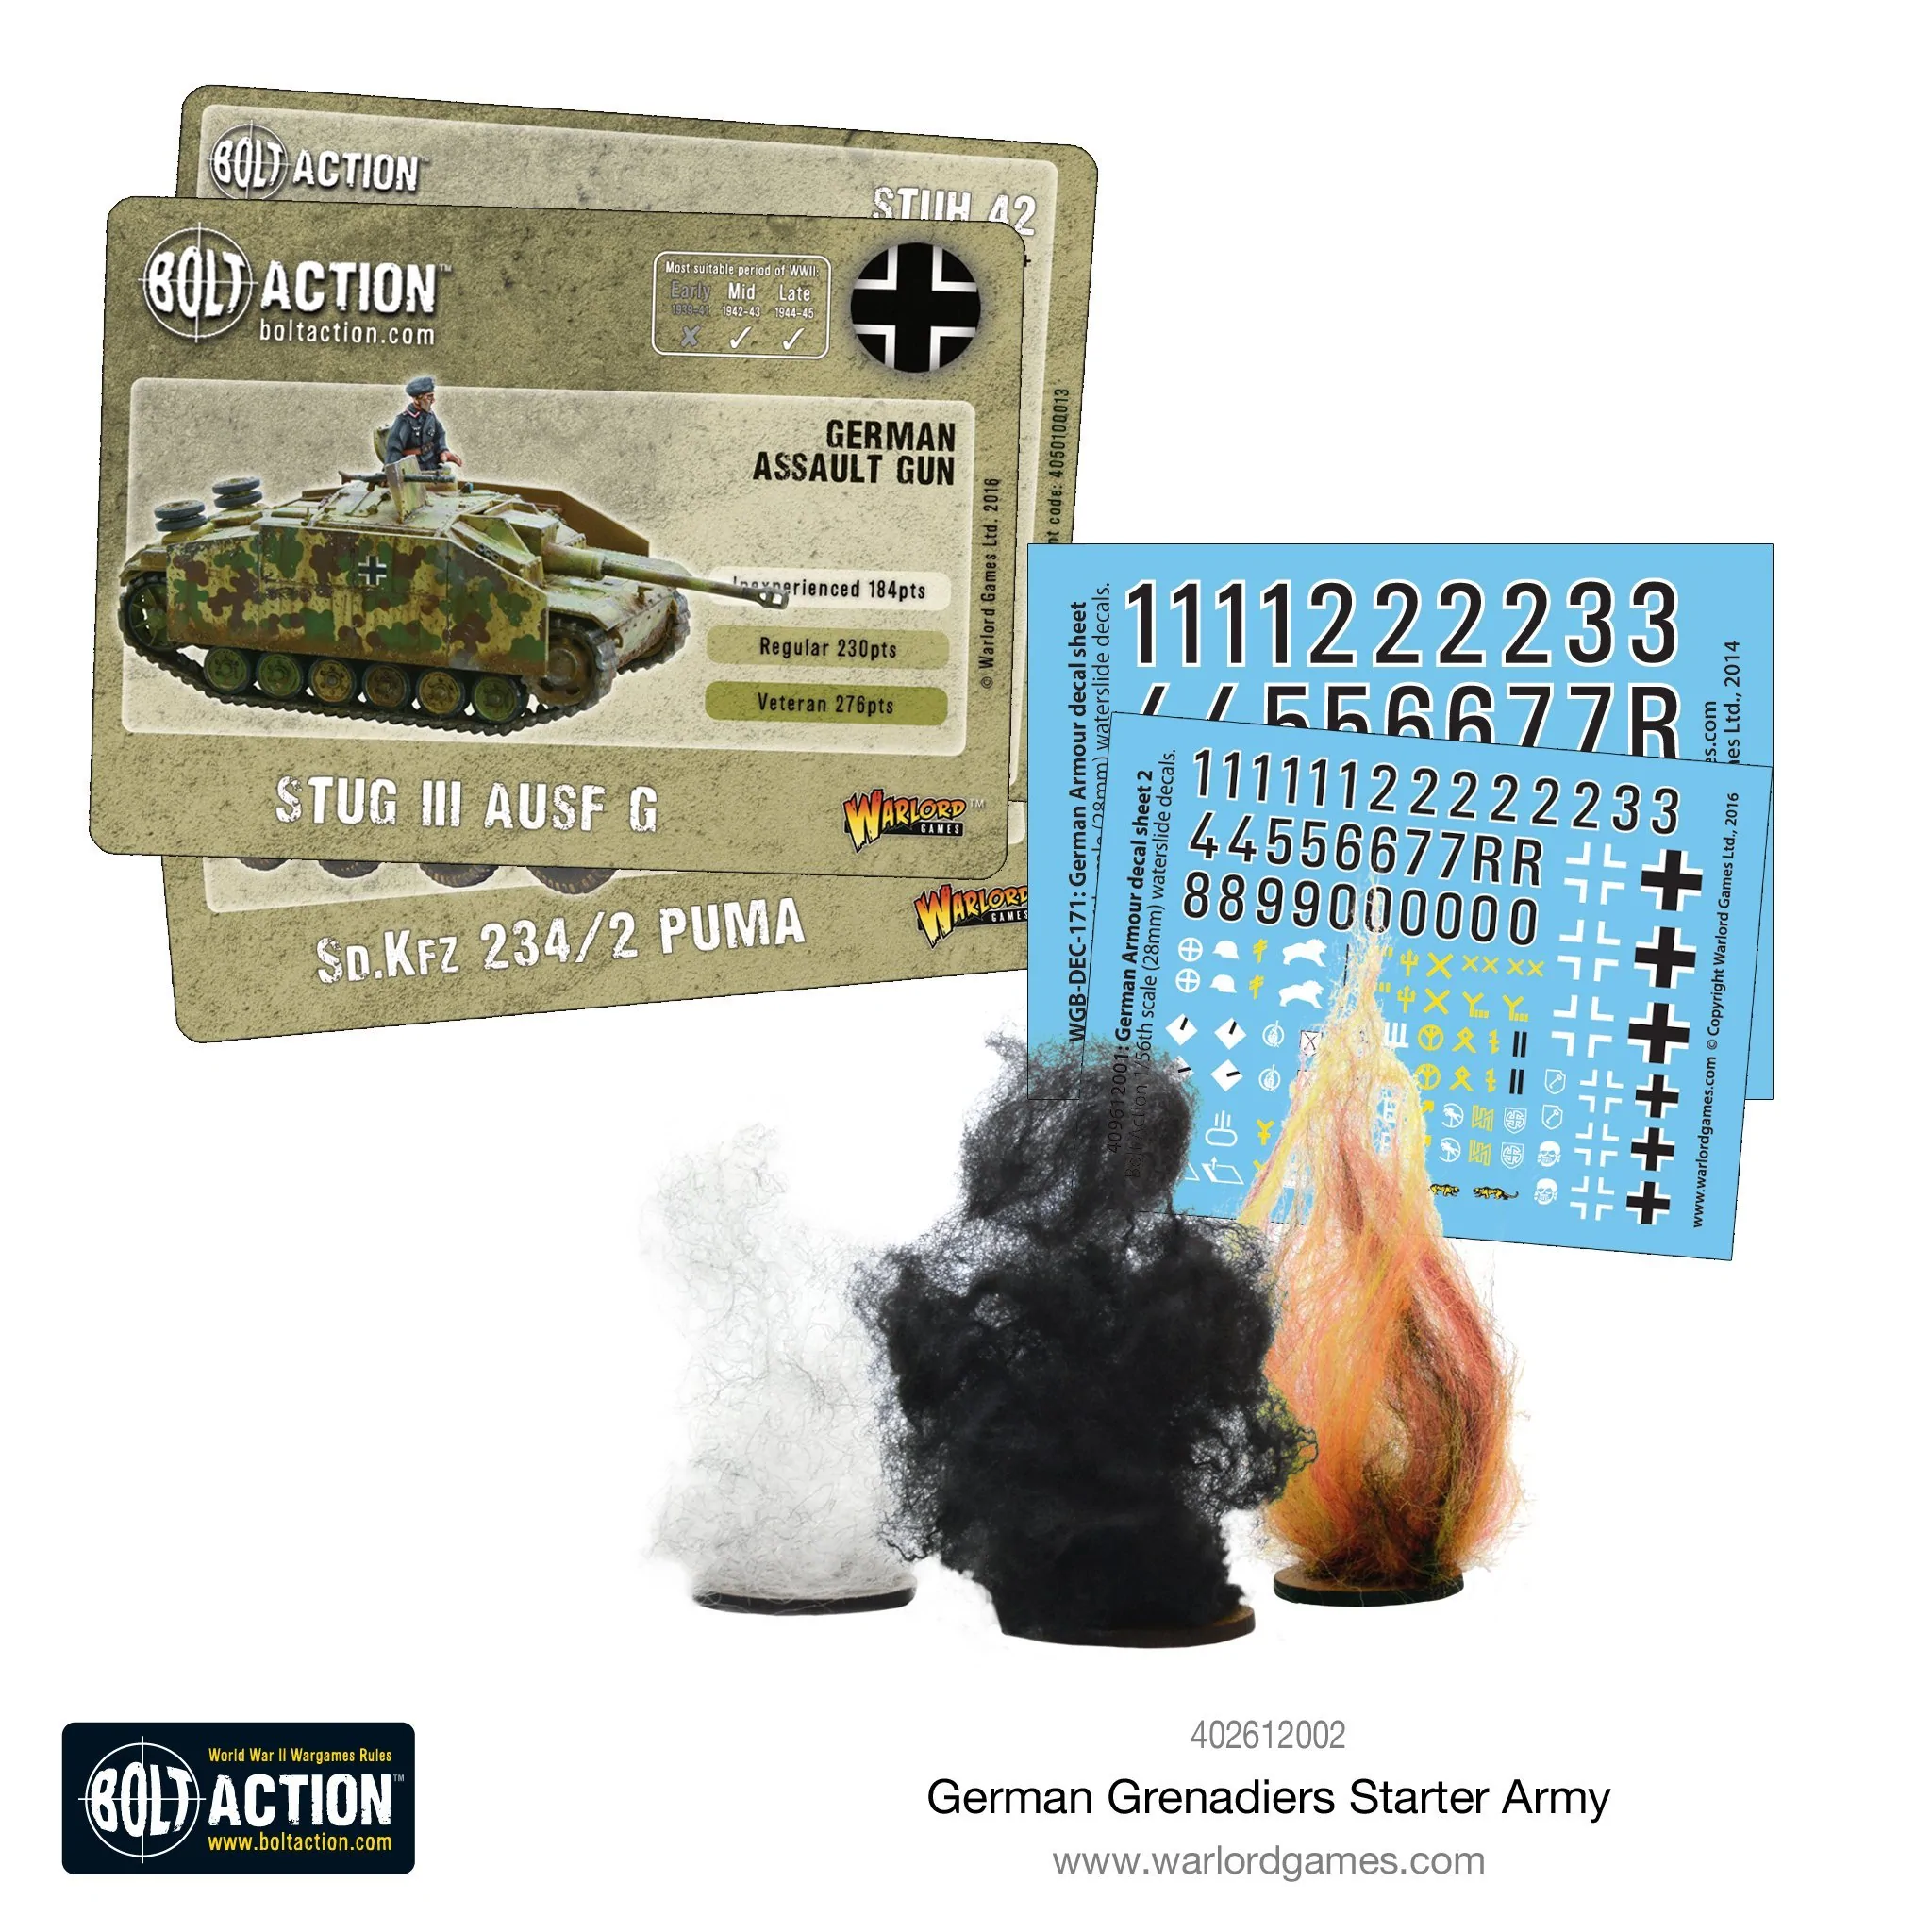 German Grenadier Starter Army (2018)-1667497683.webp